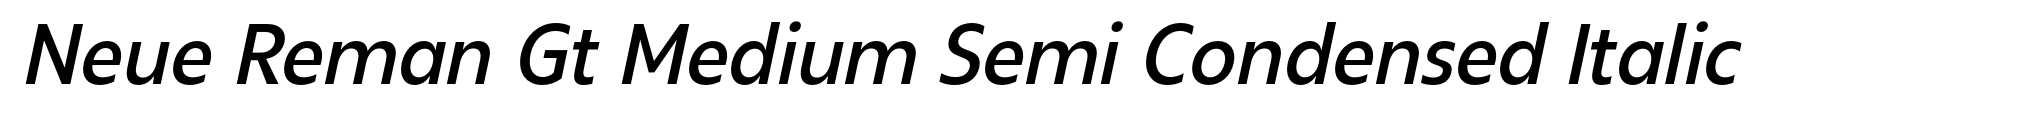 Neue Reman Gt Medium Semi Condensed Italic image